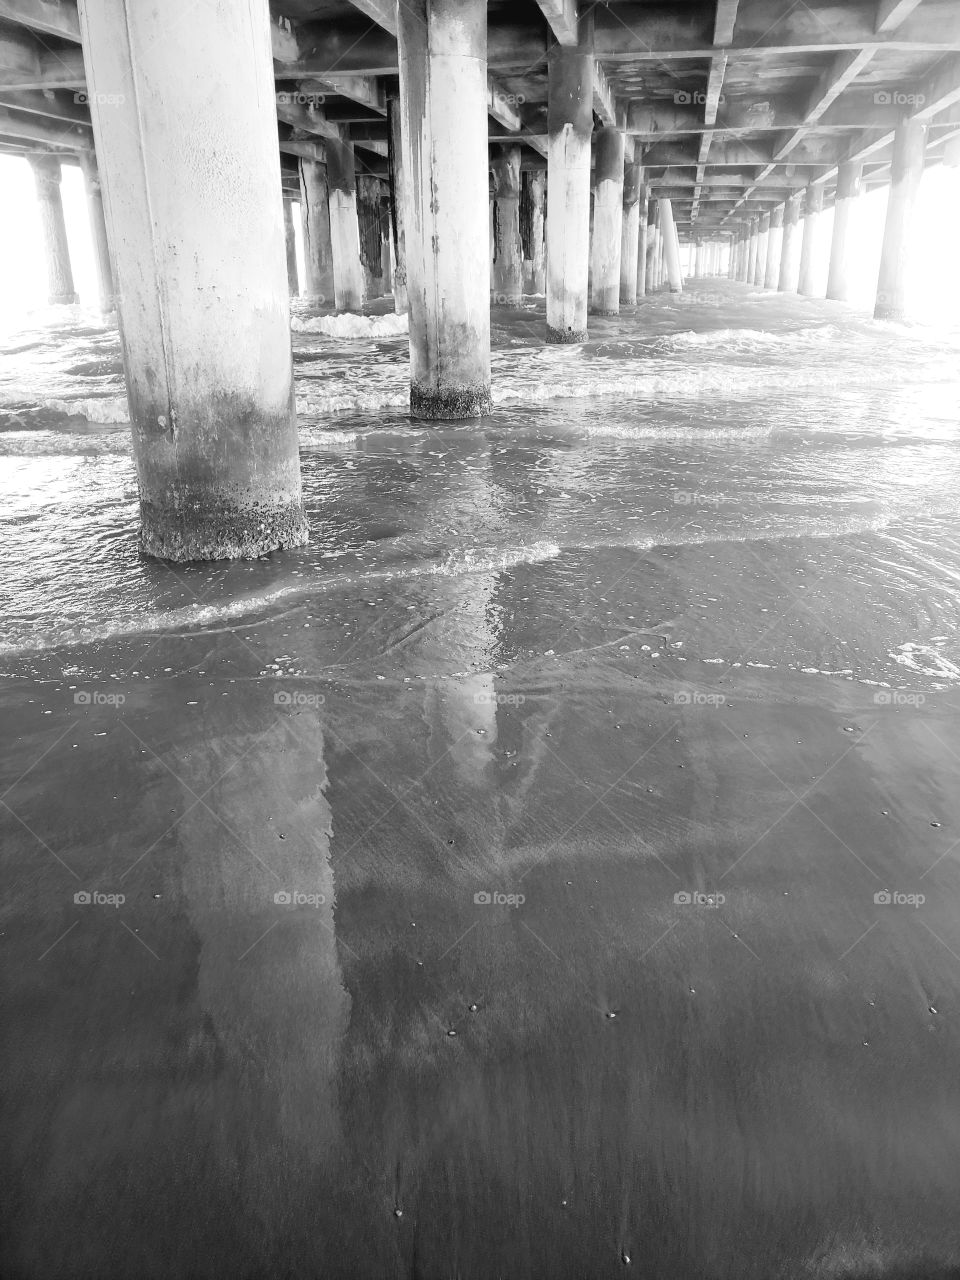 Waves under a pier